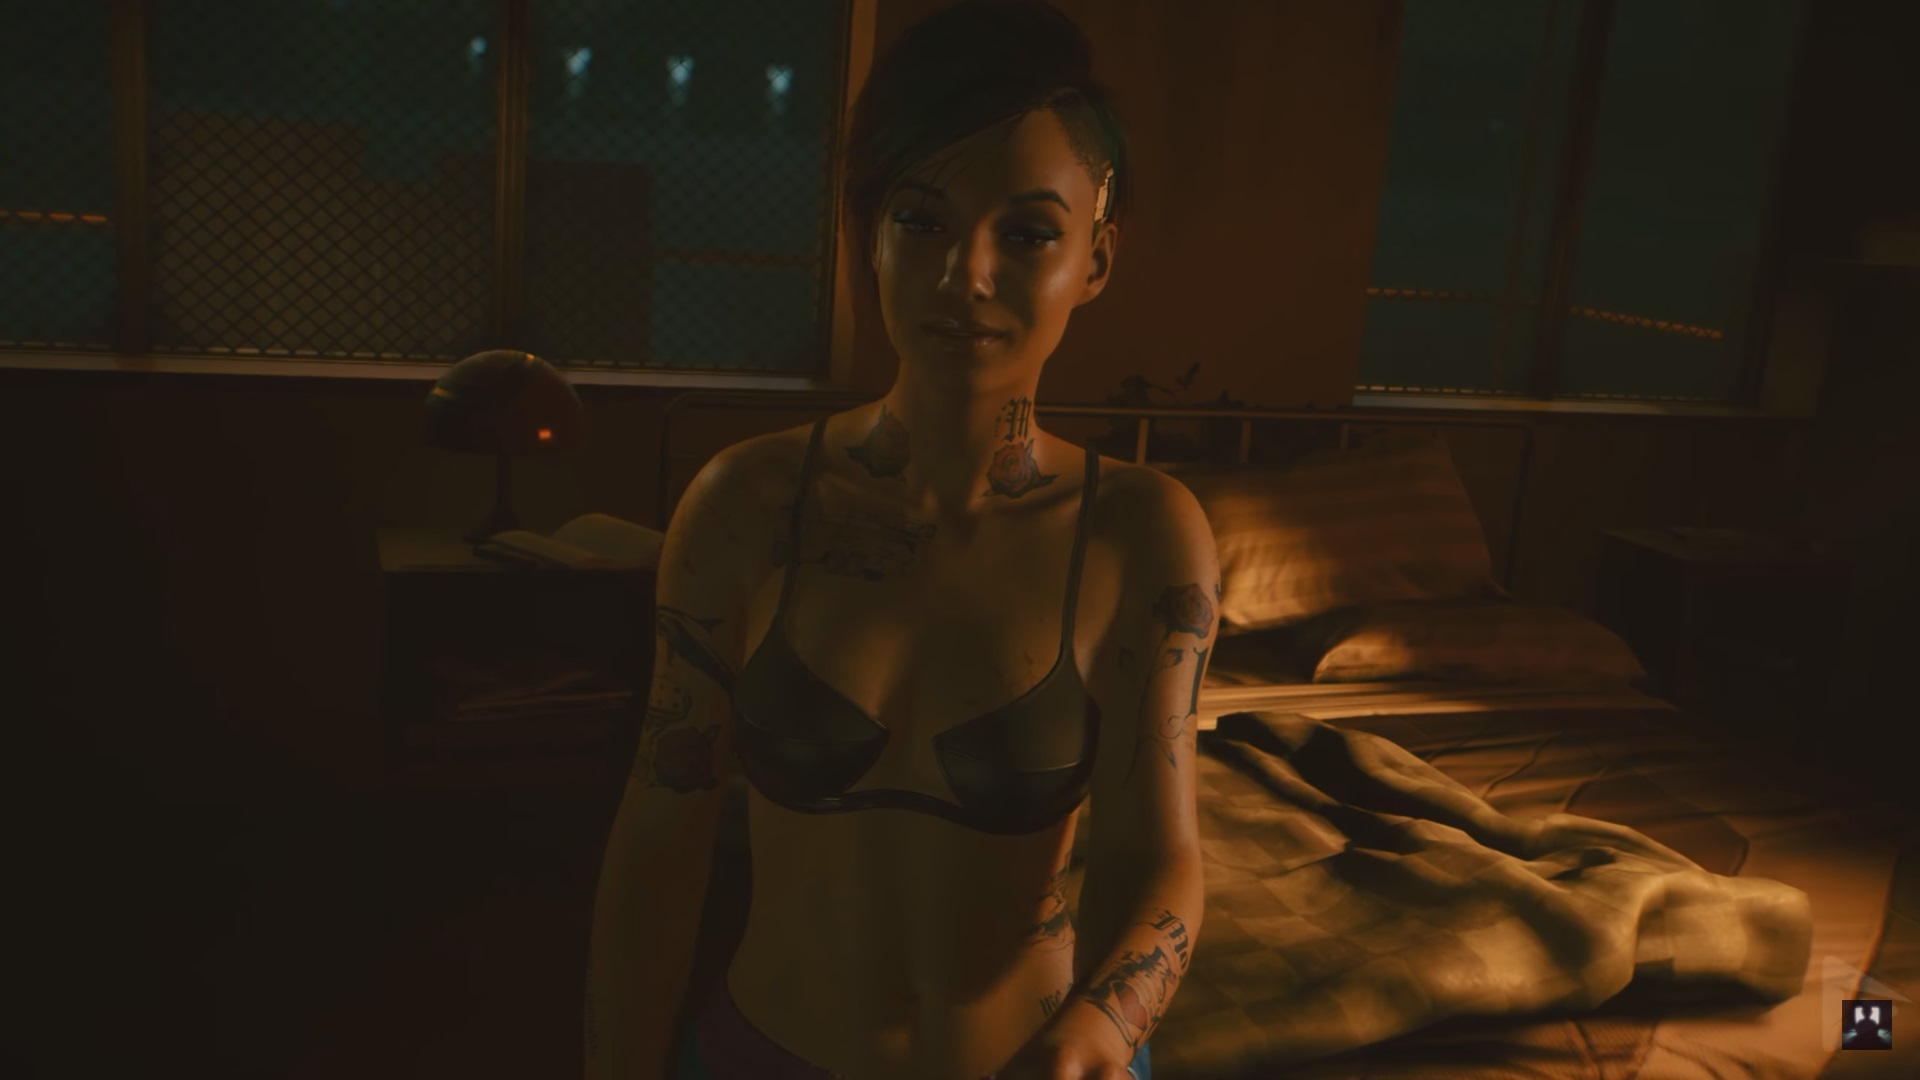 Judy Alvarez ในเกม Cyberpunk 2077